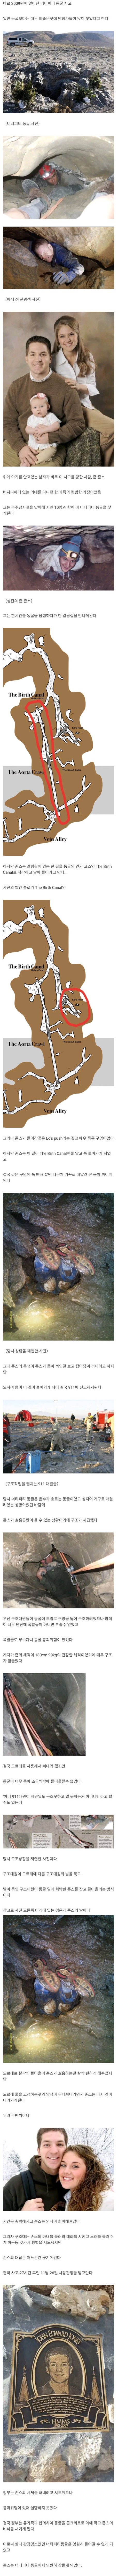 미국 최악의 동굴사고